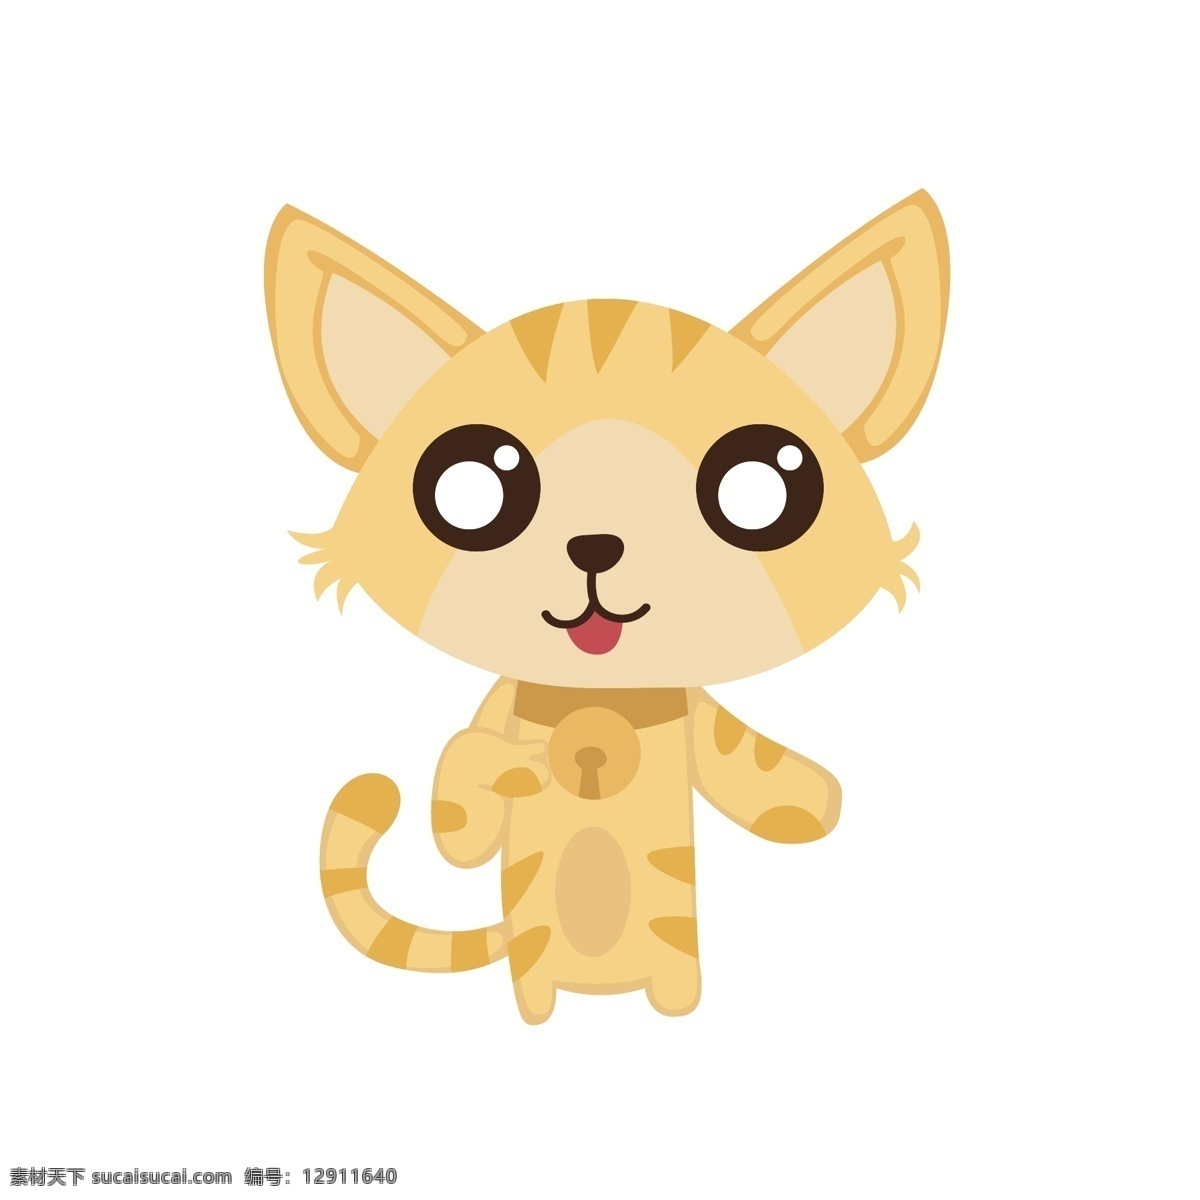 卡通 金钱豹 矢量 卡通动物 可爱 可爱动物 可爱的 可爱的金钱豹 豹子 卡通的豹子